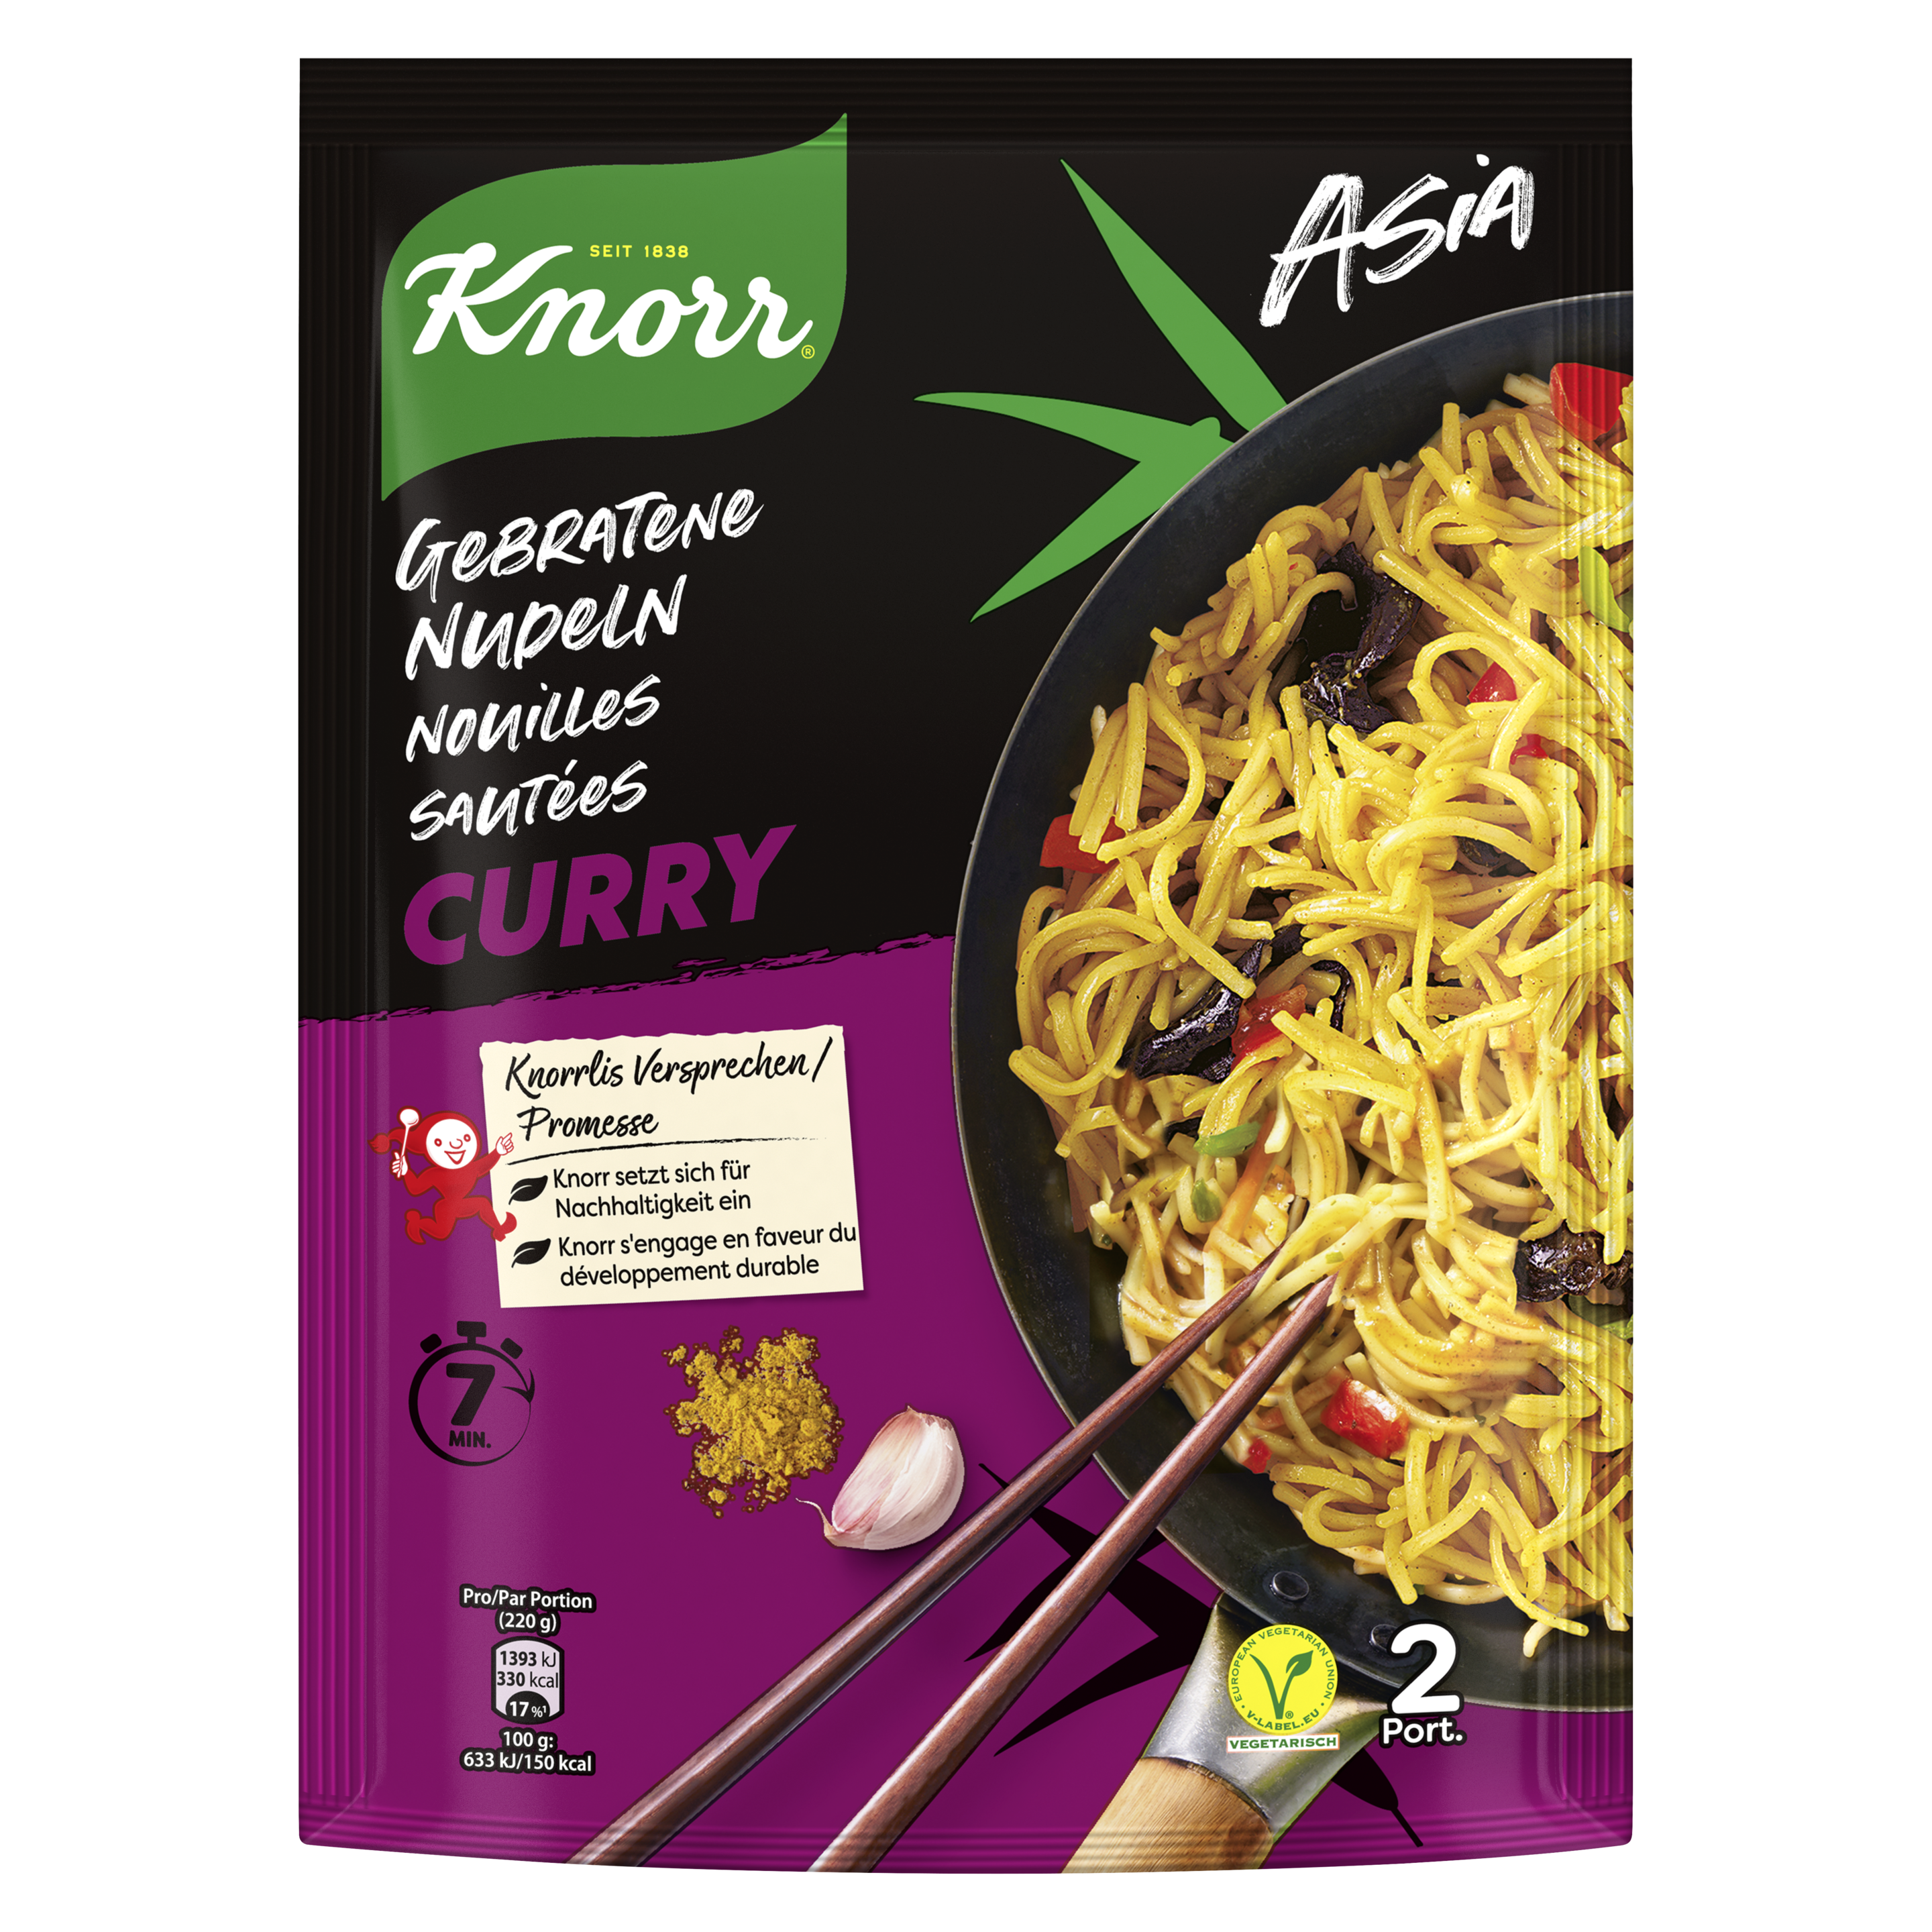 KNORR Asia nouilles sautées Curry sachet 1-2 portions